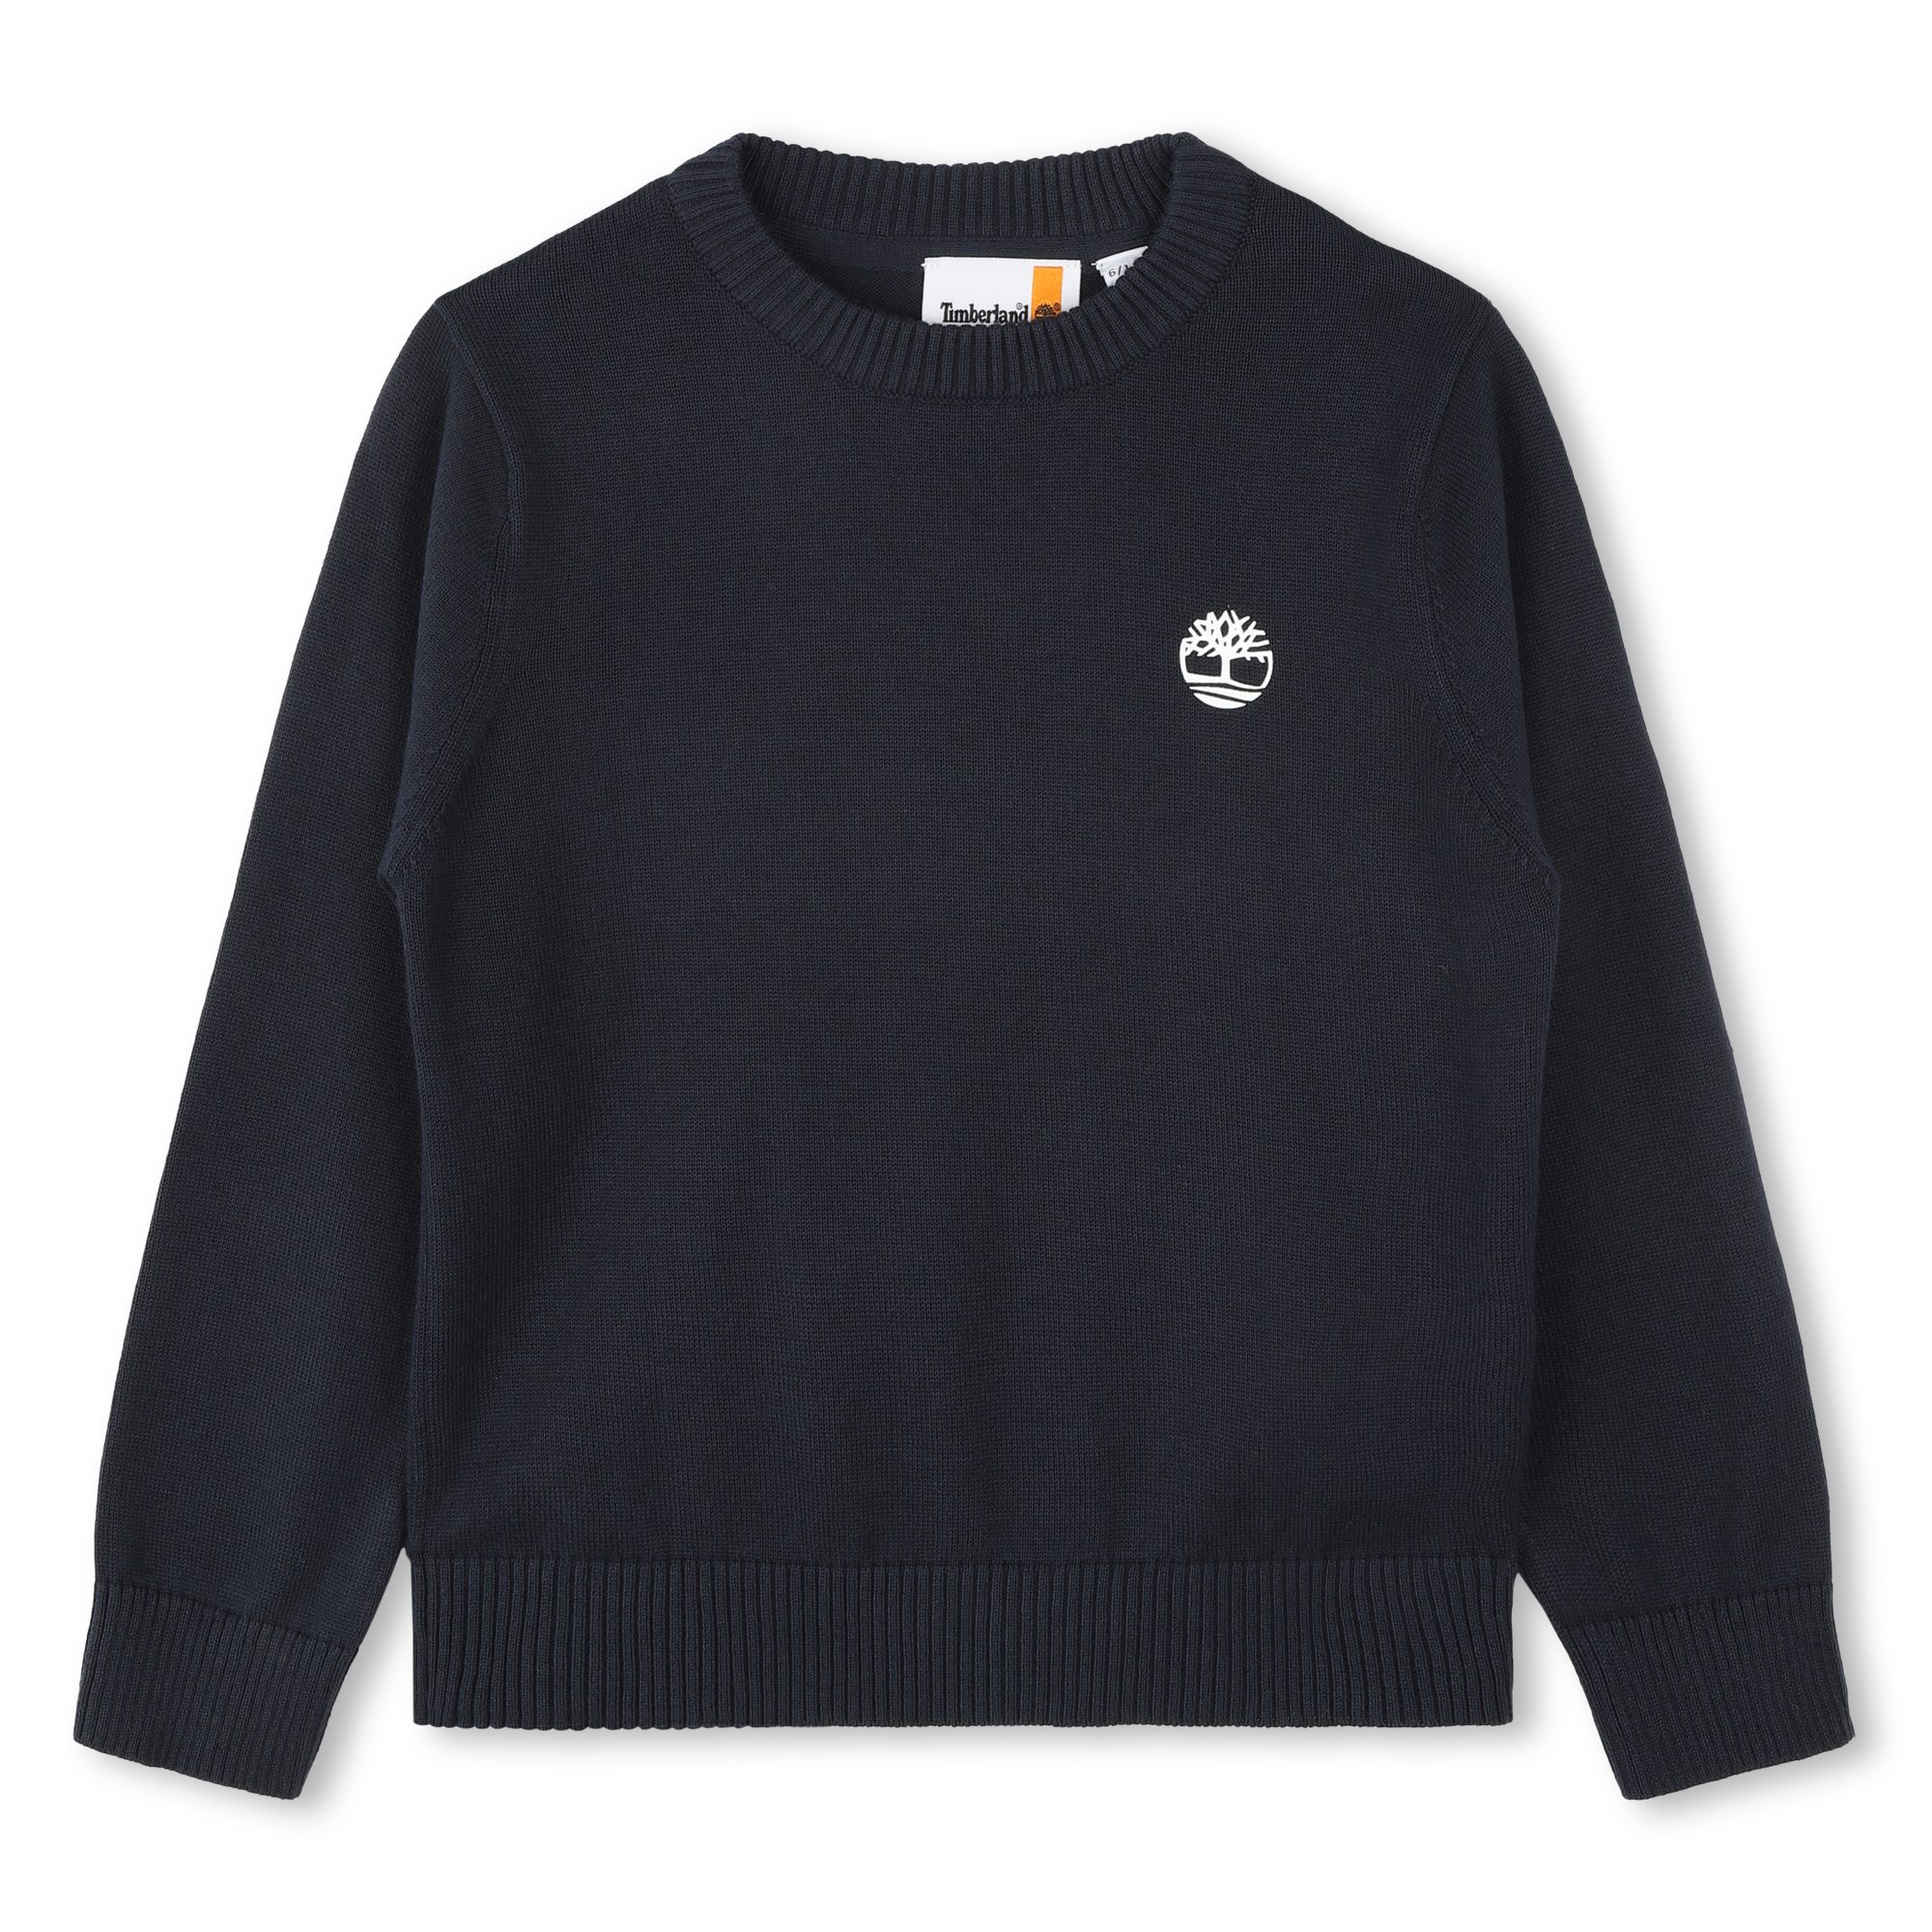 Baumwoll-pullover mit logo TIMBERLAND Für JUNGE